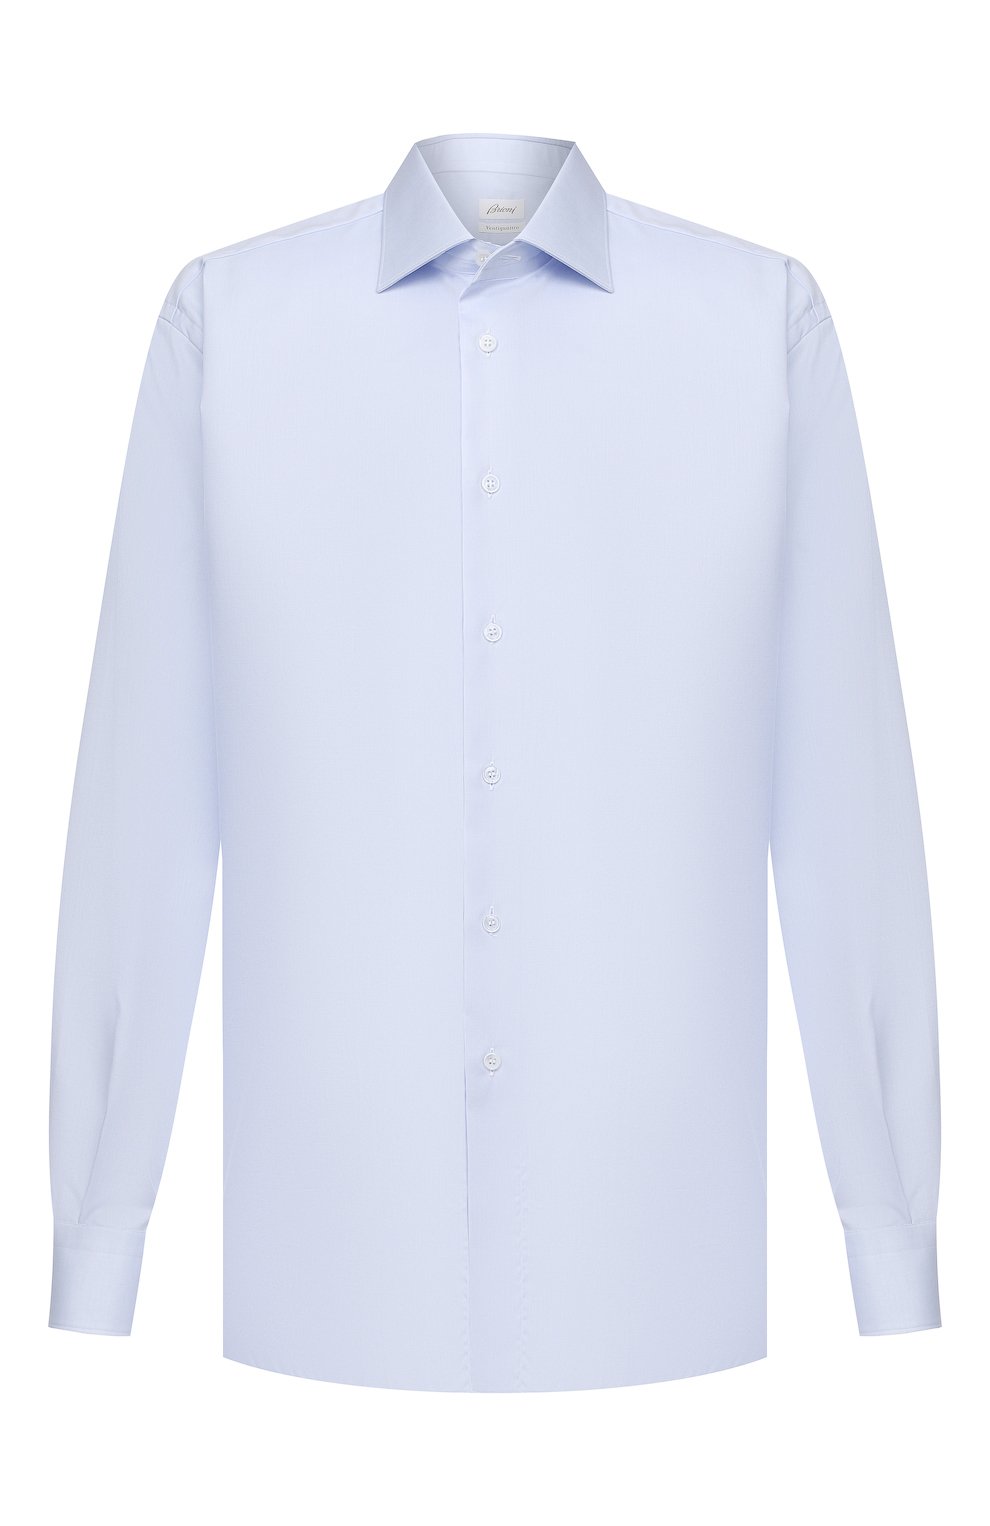 Рубашки Brioni, Хлопковая сорочка Brioni, Италия, Голубой, Хлопок: 100%;, 11604287  - купить